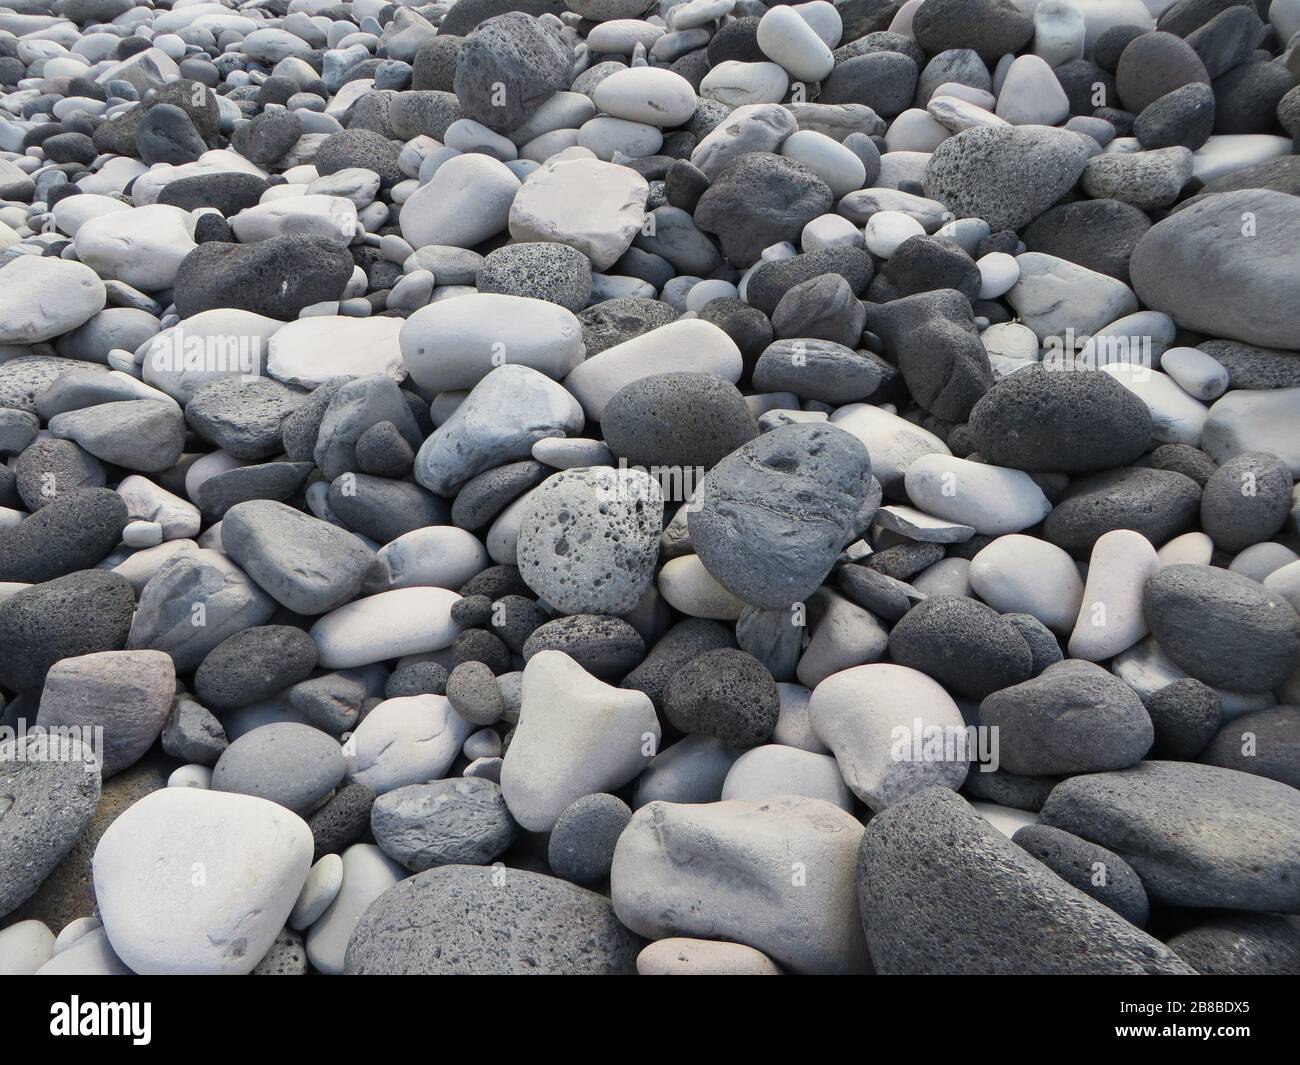 Mélange de pierres blanches et grises / grises sur le sol ou la plage d'Islande, nature pure, fond texturé avec structure aux couleurs claires et sombres Banque D'Images